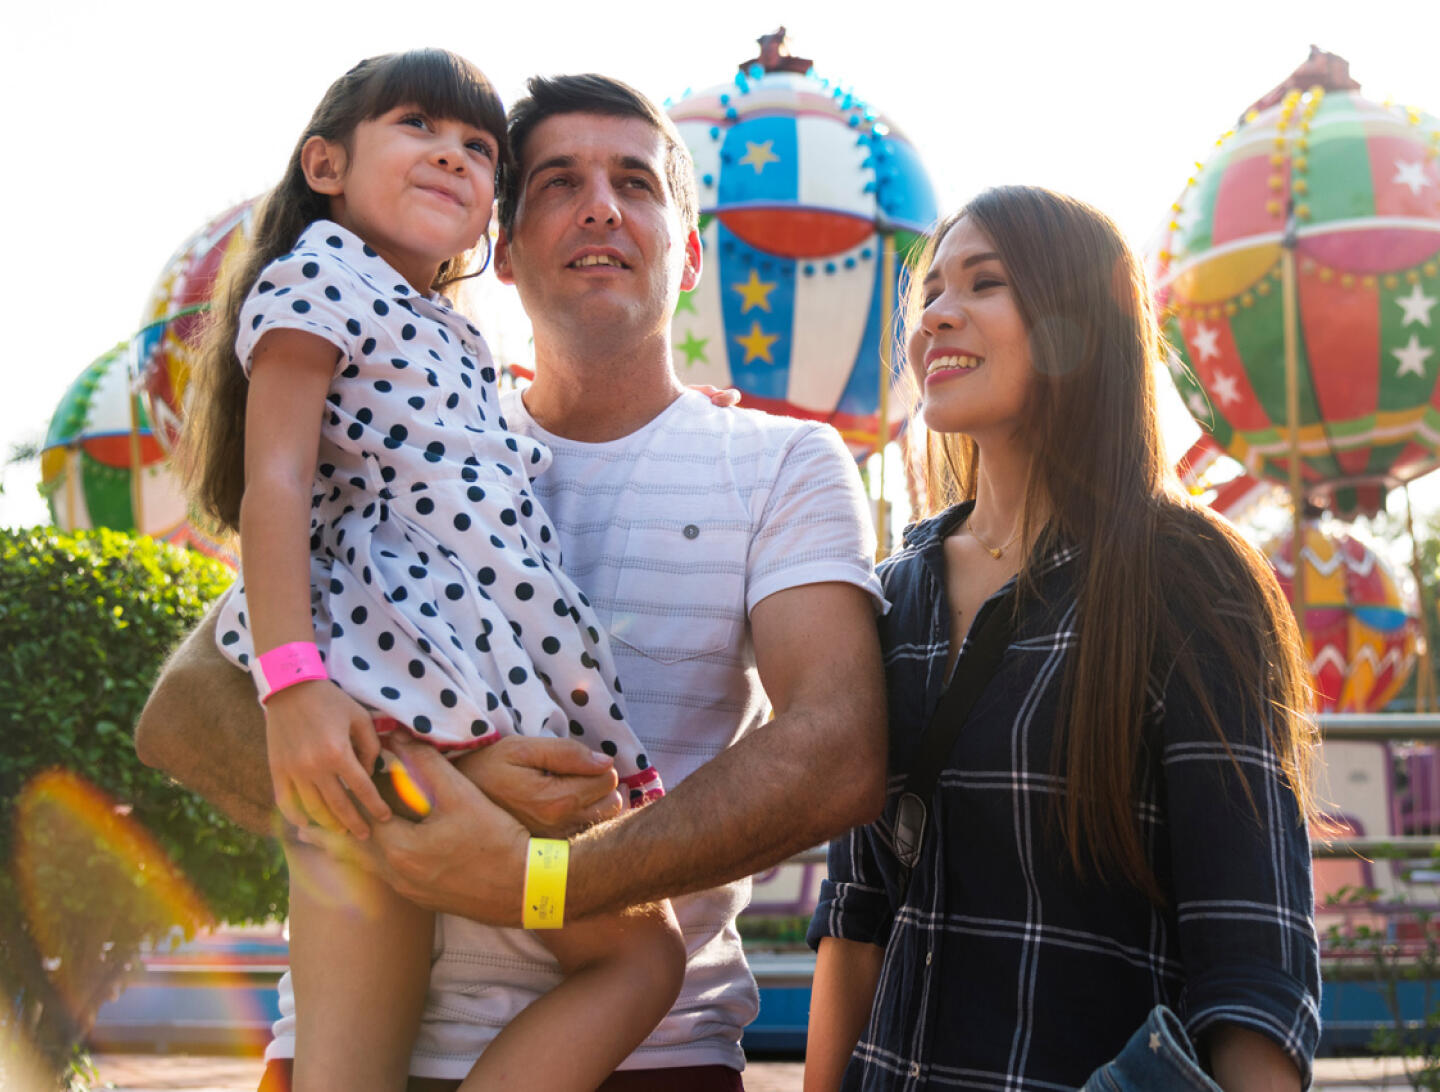 Familia feliz en el Parque del Principito con atracciones coloridas en el fondo